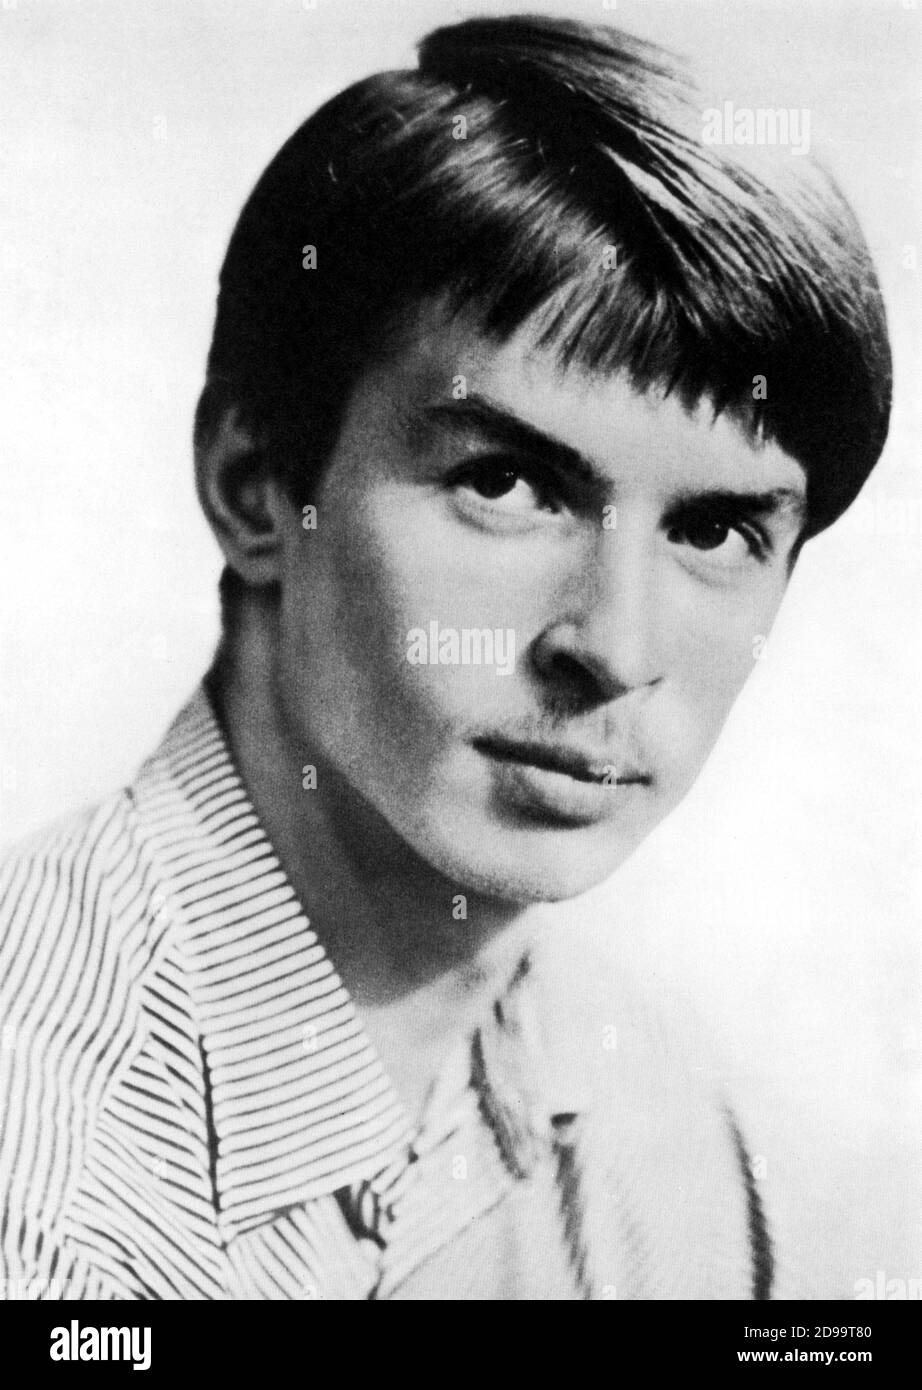 1955 c., RUSSIE : le célèbre danseur et coregraphe russe RUDOLF NUREYEV ( 1938 - 1993 ) quand était un jeune étudiant à Leningrad , Russie - Dead for AIDS - BALLERINO - DANZATORE - COREOGRAFO - DANZA - BALLET - DANSE - BALLETTO - TEATHER - TEATRO - personnalité jeune enfant - Personalità da giovani ( bambini ) - portrait - ritratto - NUREEV - NURAIEV - NURAYEV - GAY - homosexualité - homosexuelle - homosessualità - LGBT - omosessuale --- Archivio GBB Banque D'Images